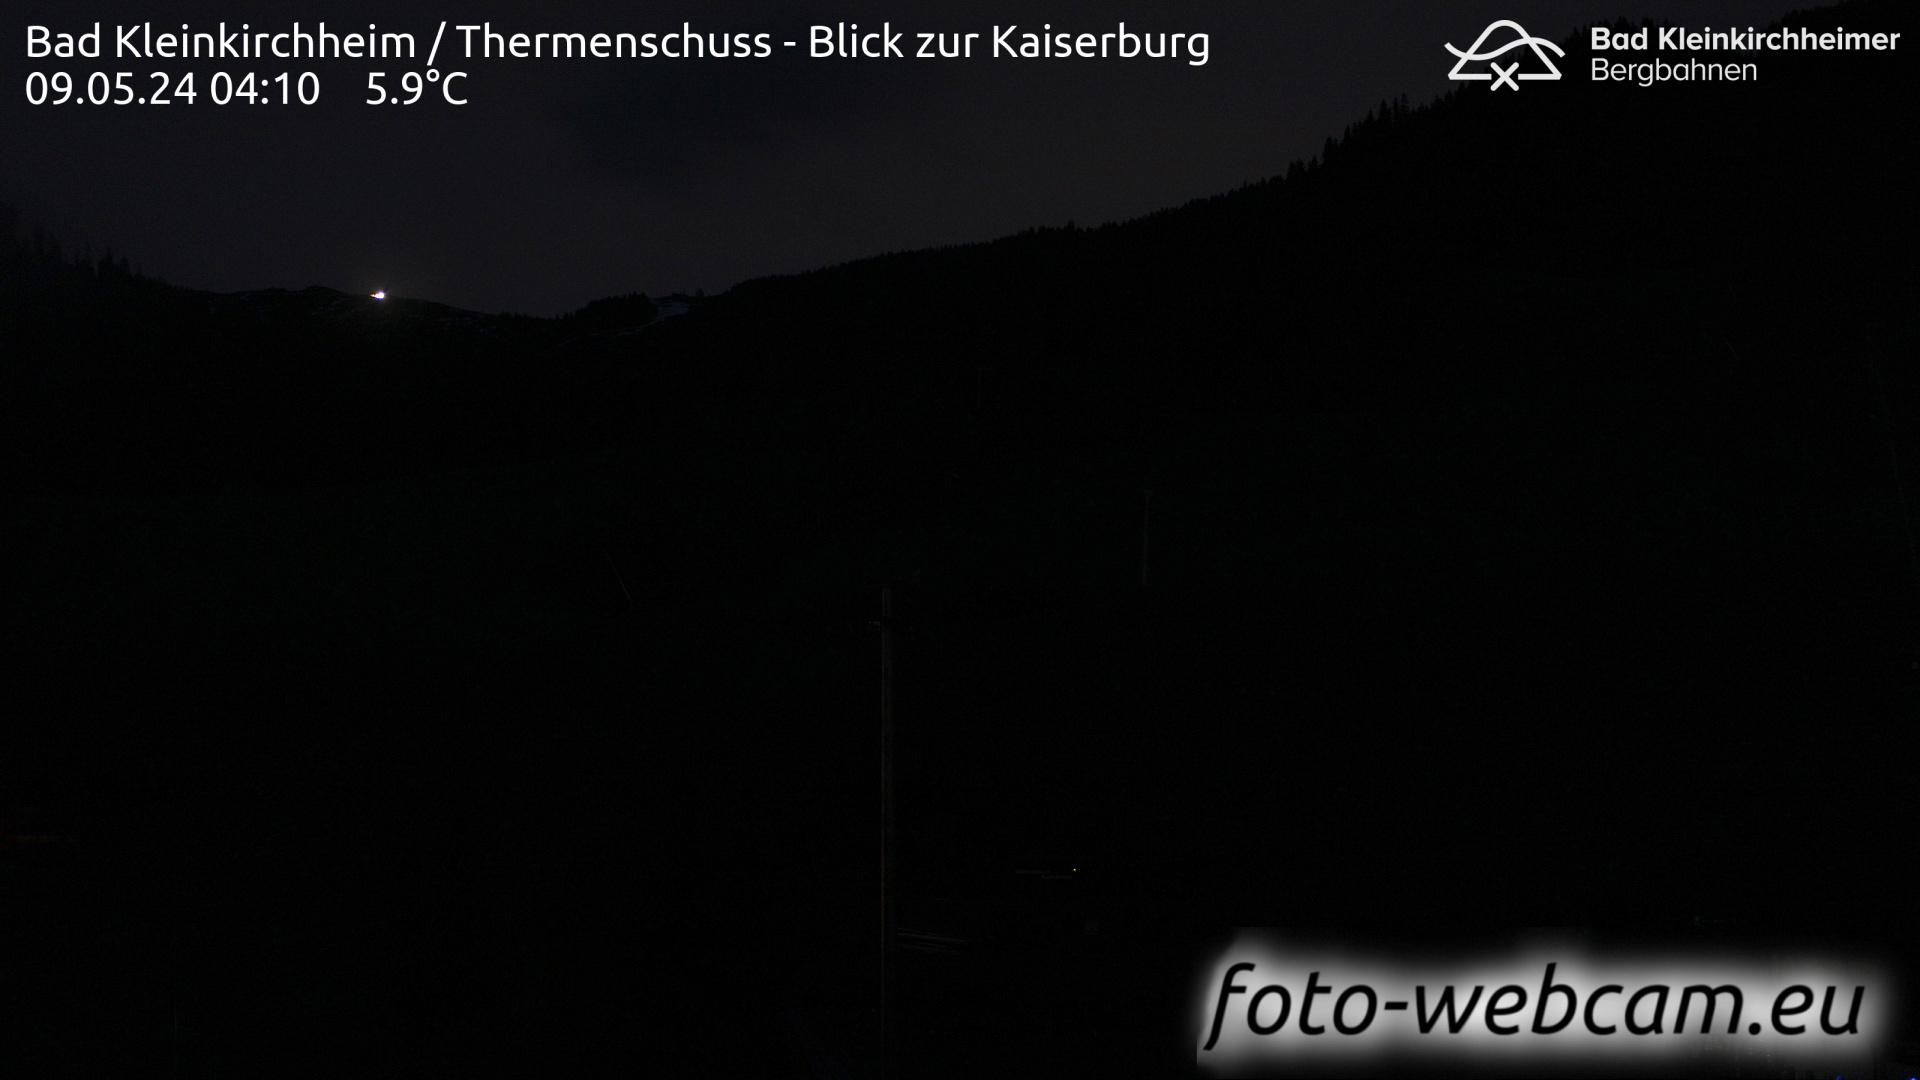 Bad Kleinkirchheim Wed. 04:20